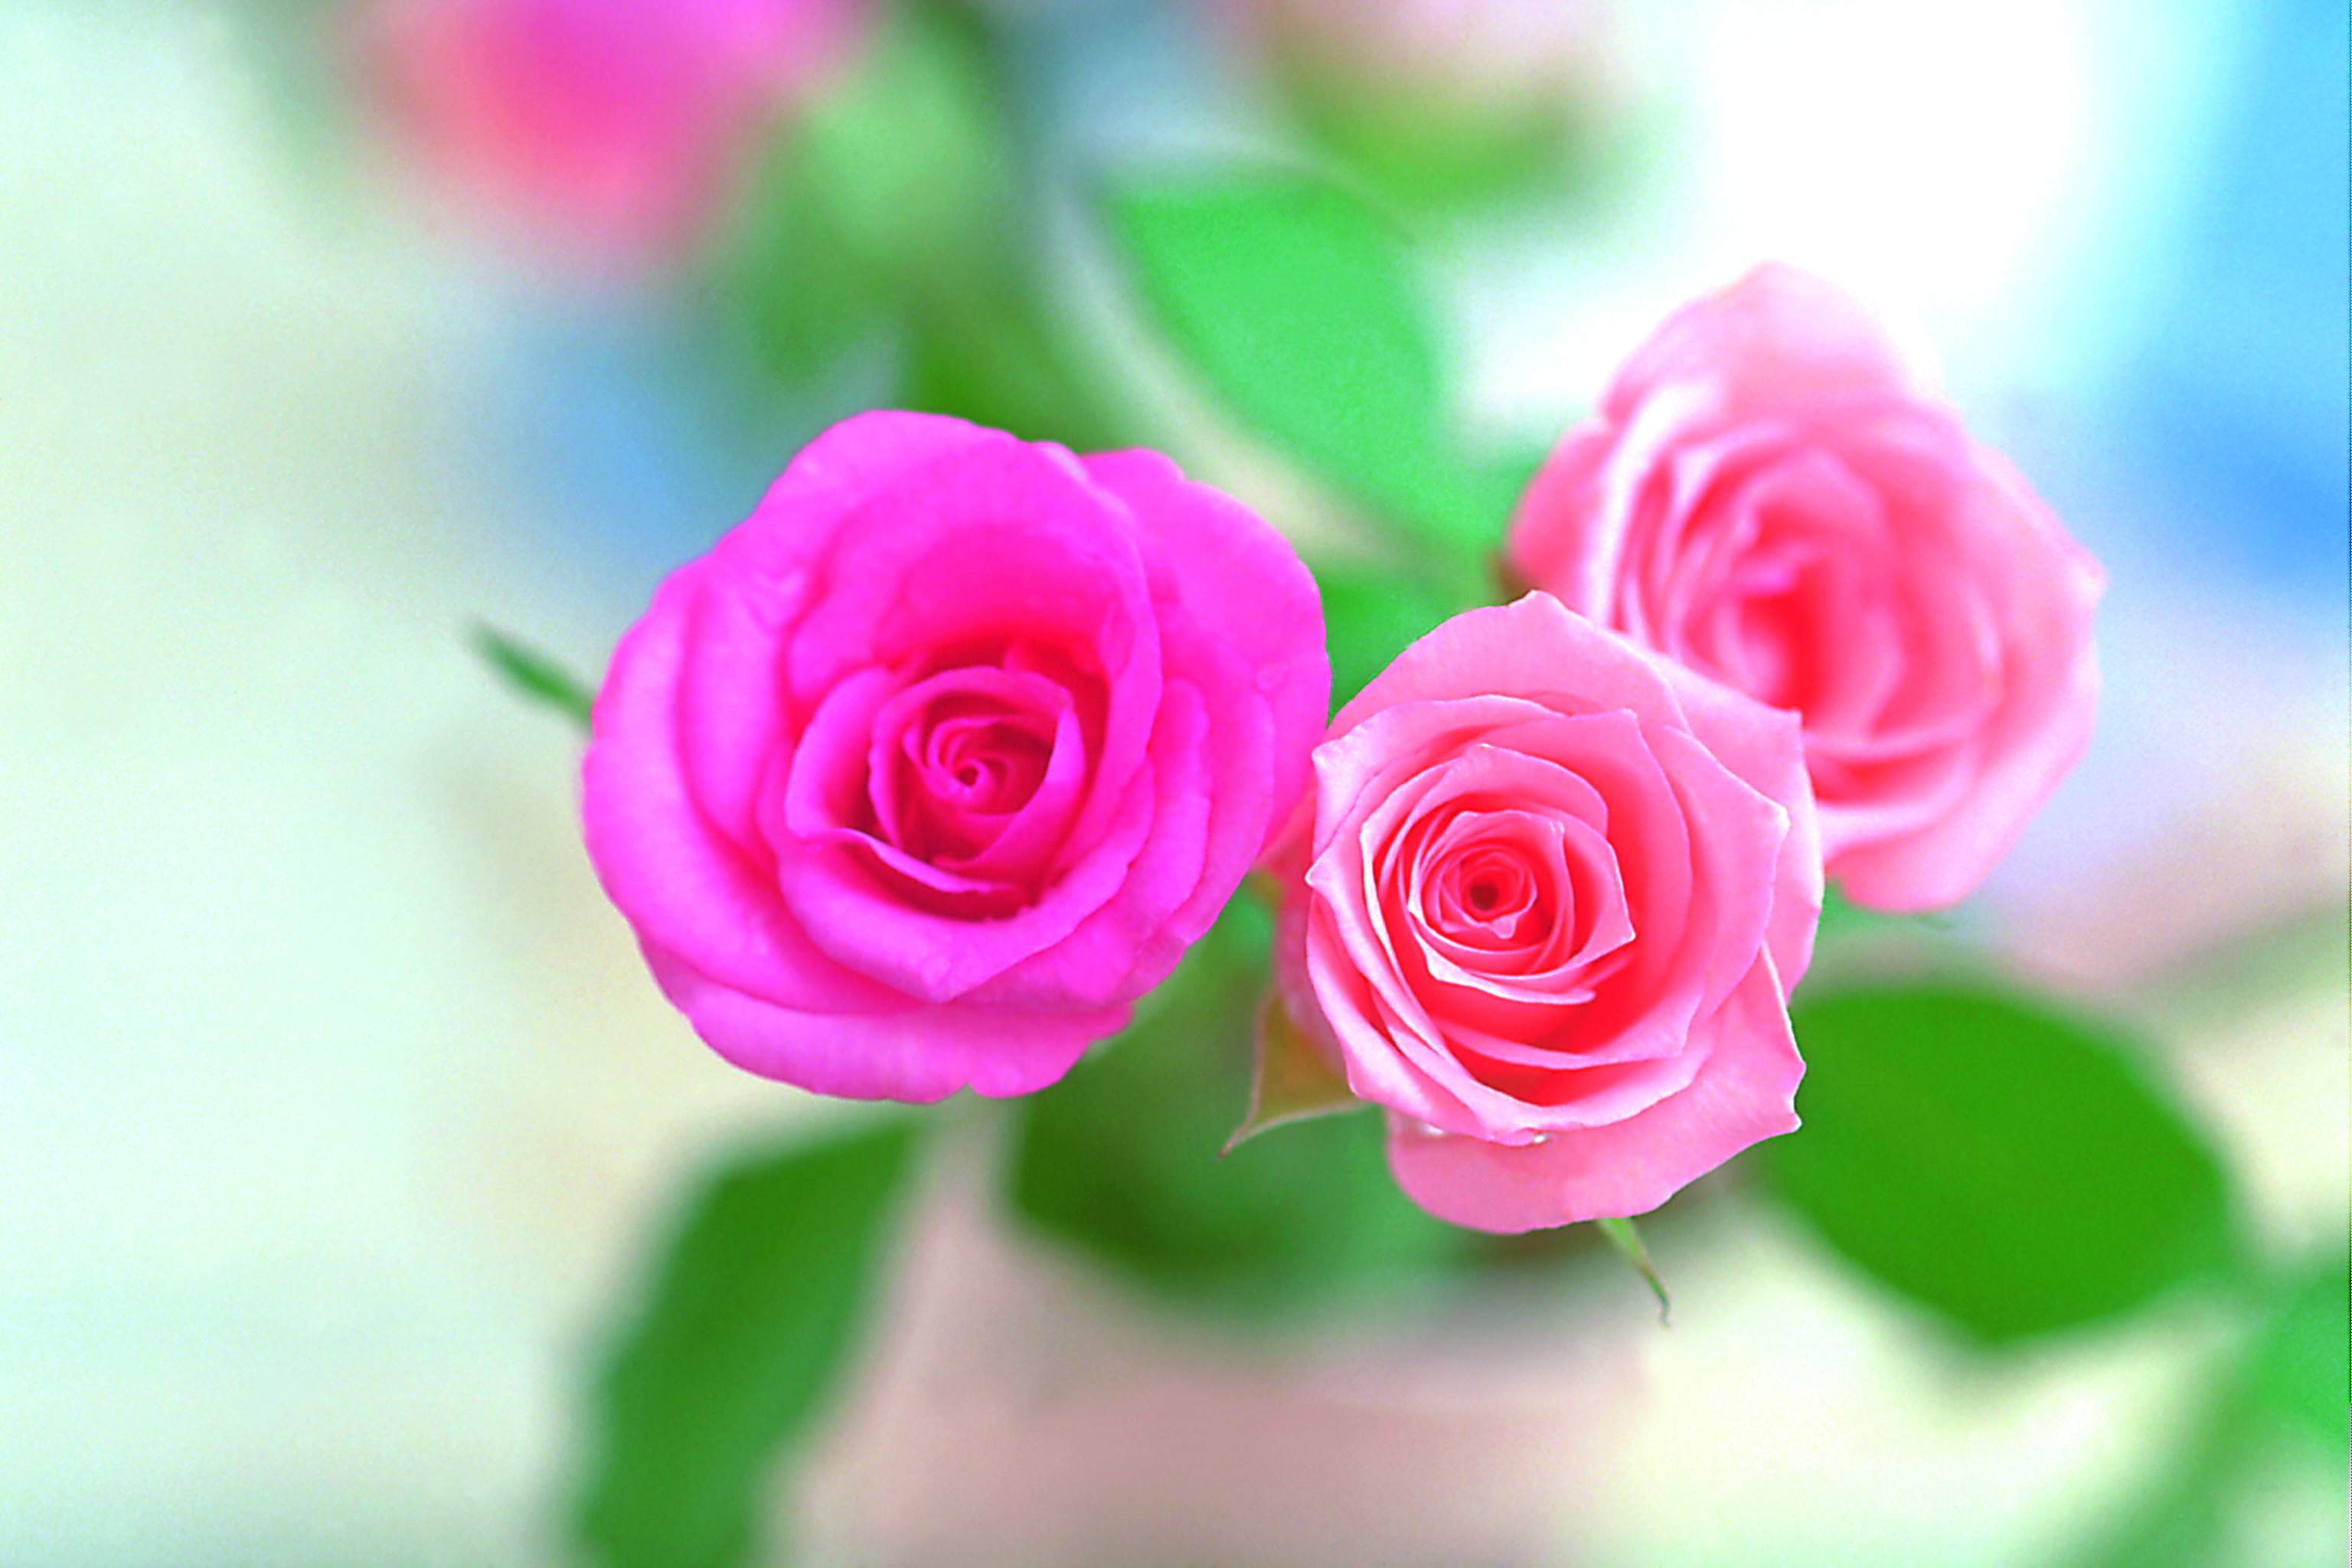 rosentapete hd,blume,blühende pflanze,gartenrosen,rosa,rose